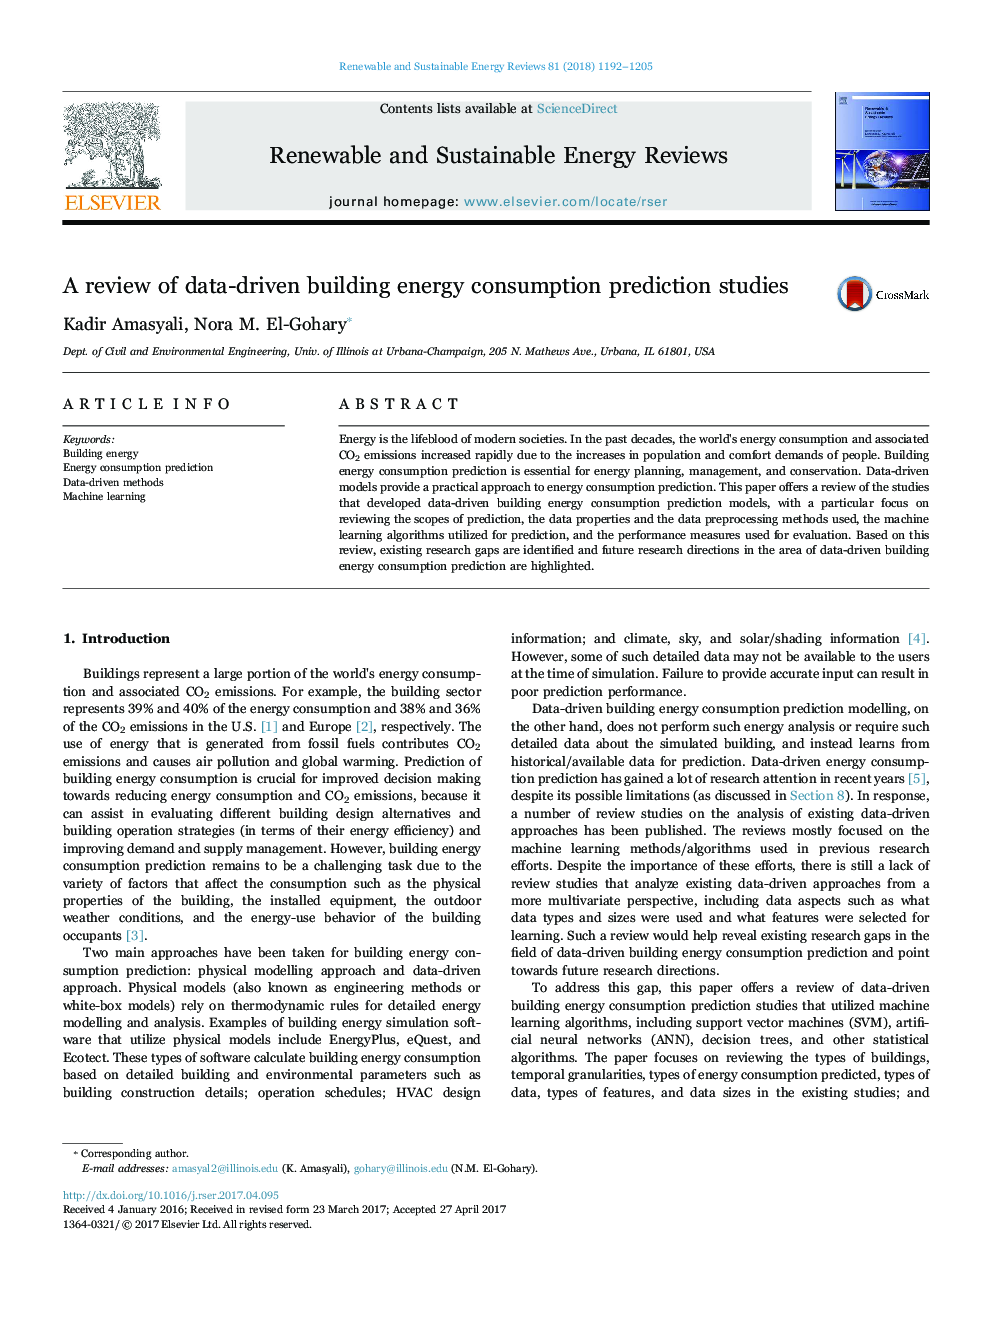 بازبینی مطالعات پیش بینی مصرف انرژی در ساختمان داده